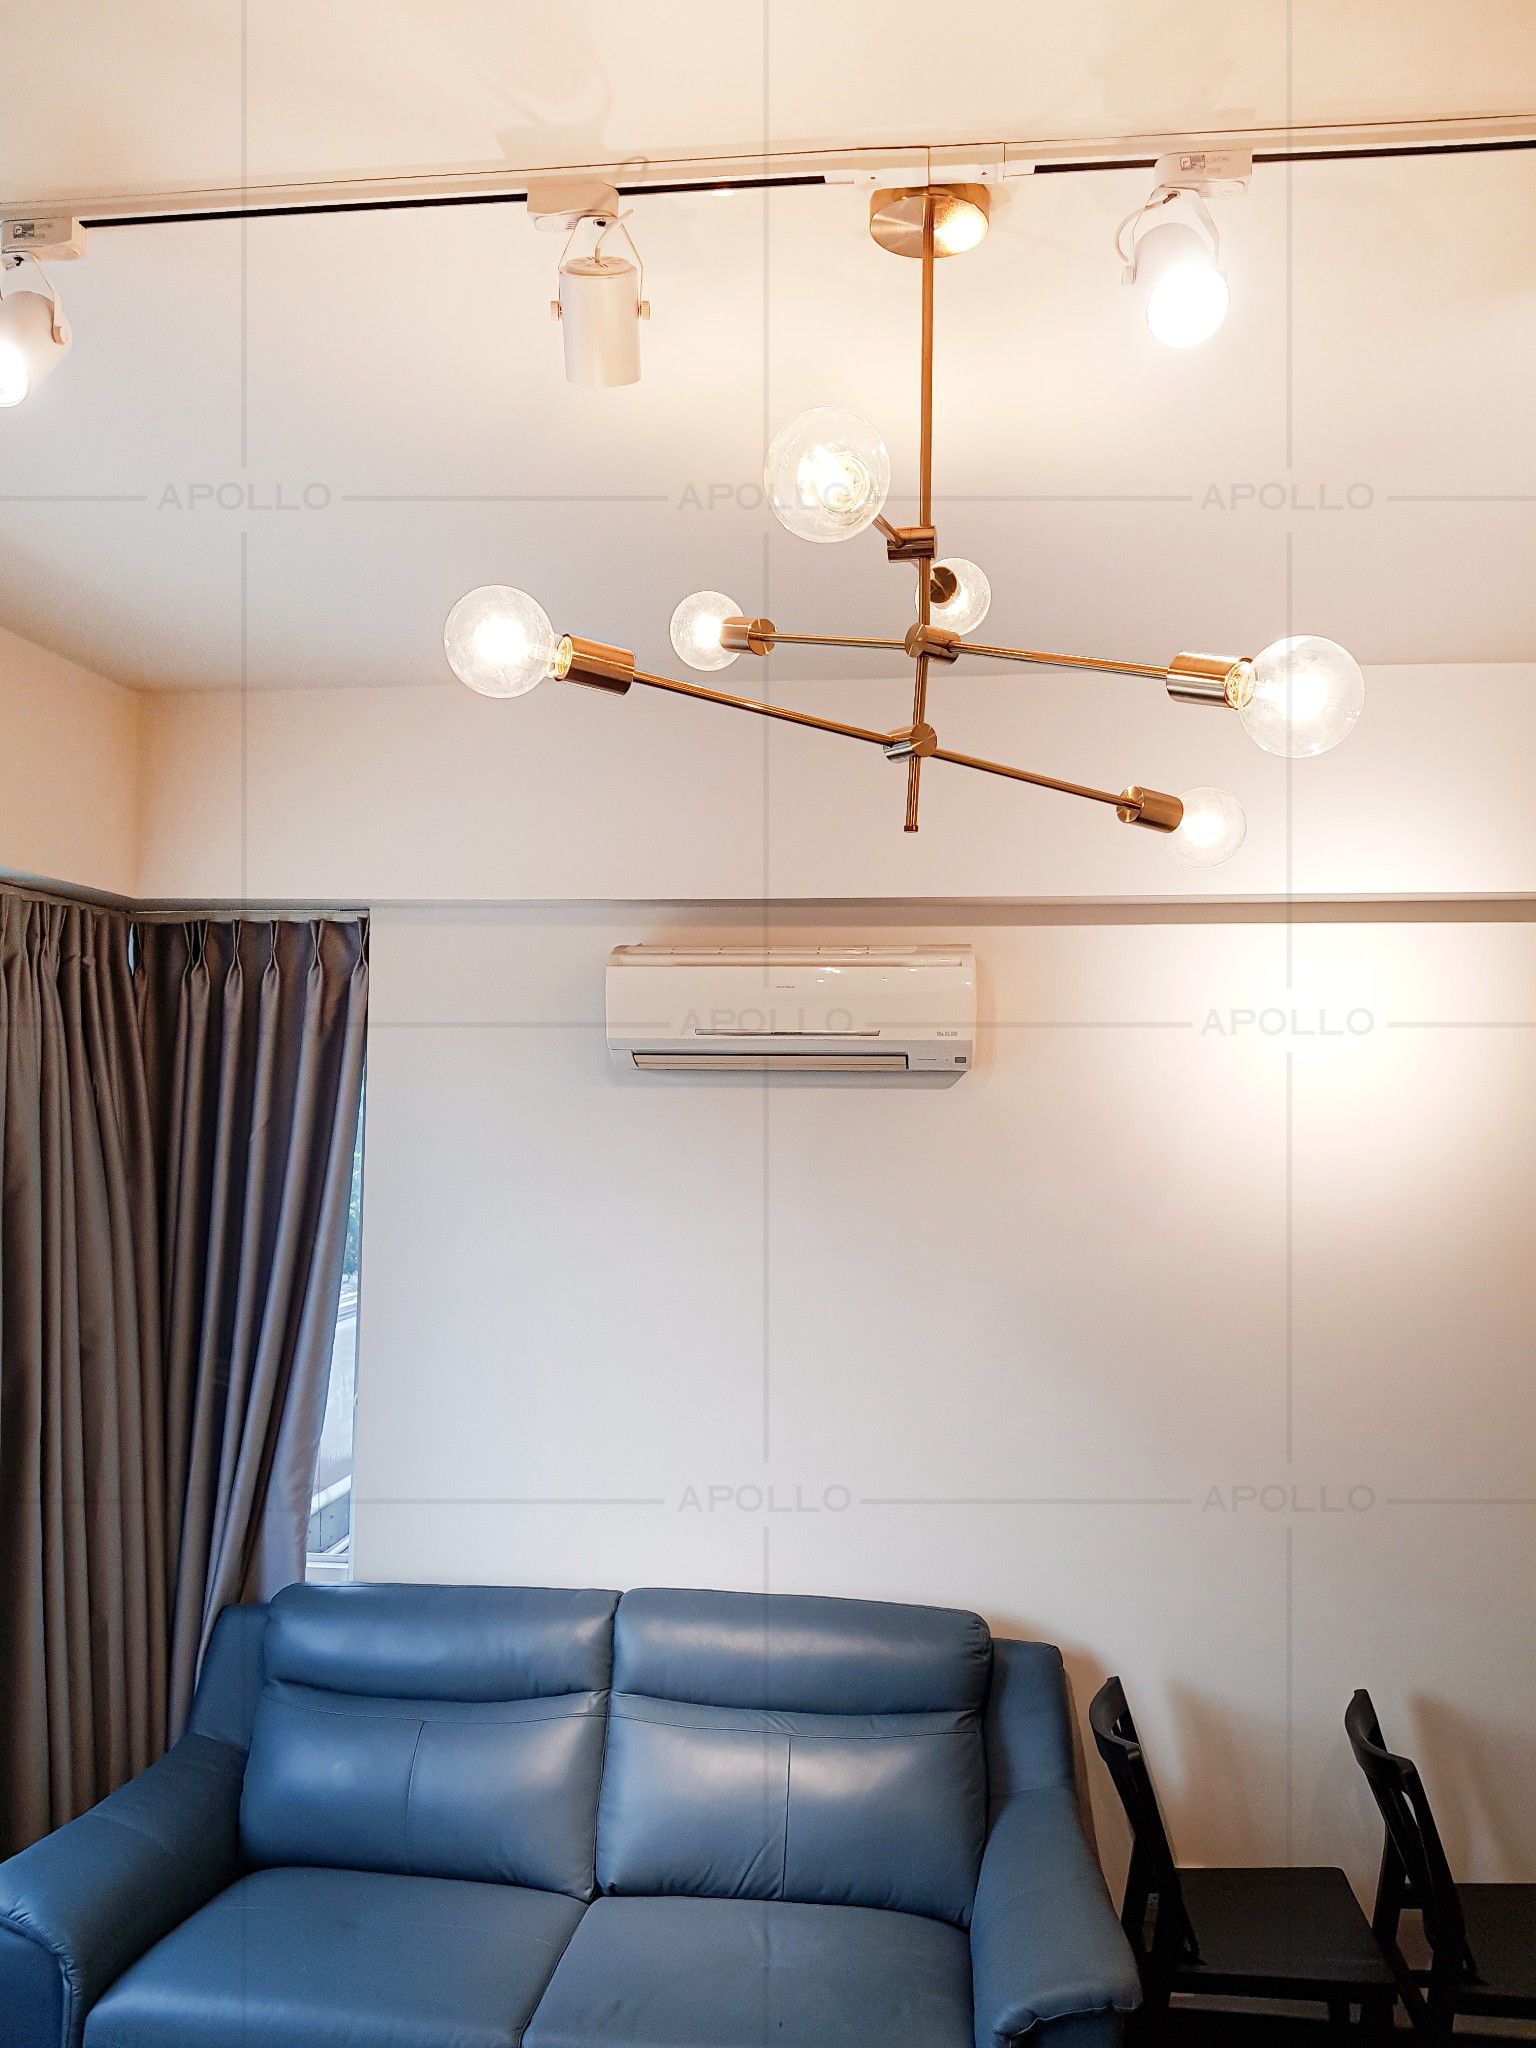 đèn trang trí phòng khách căn hộ phong cách đơn giản scandinavian